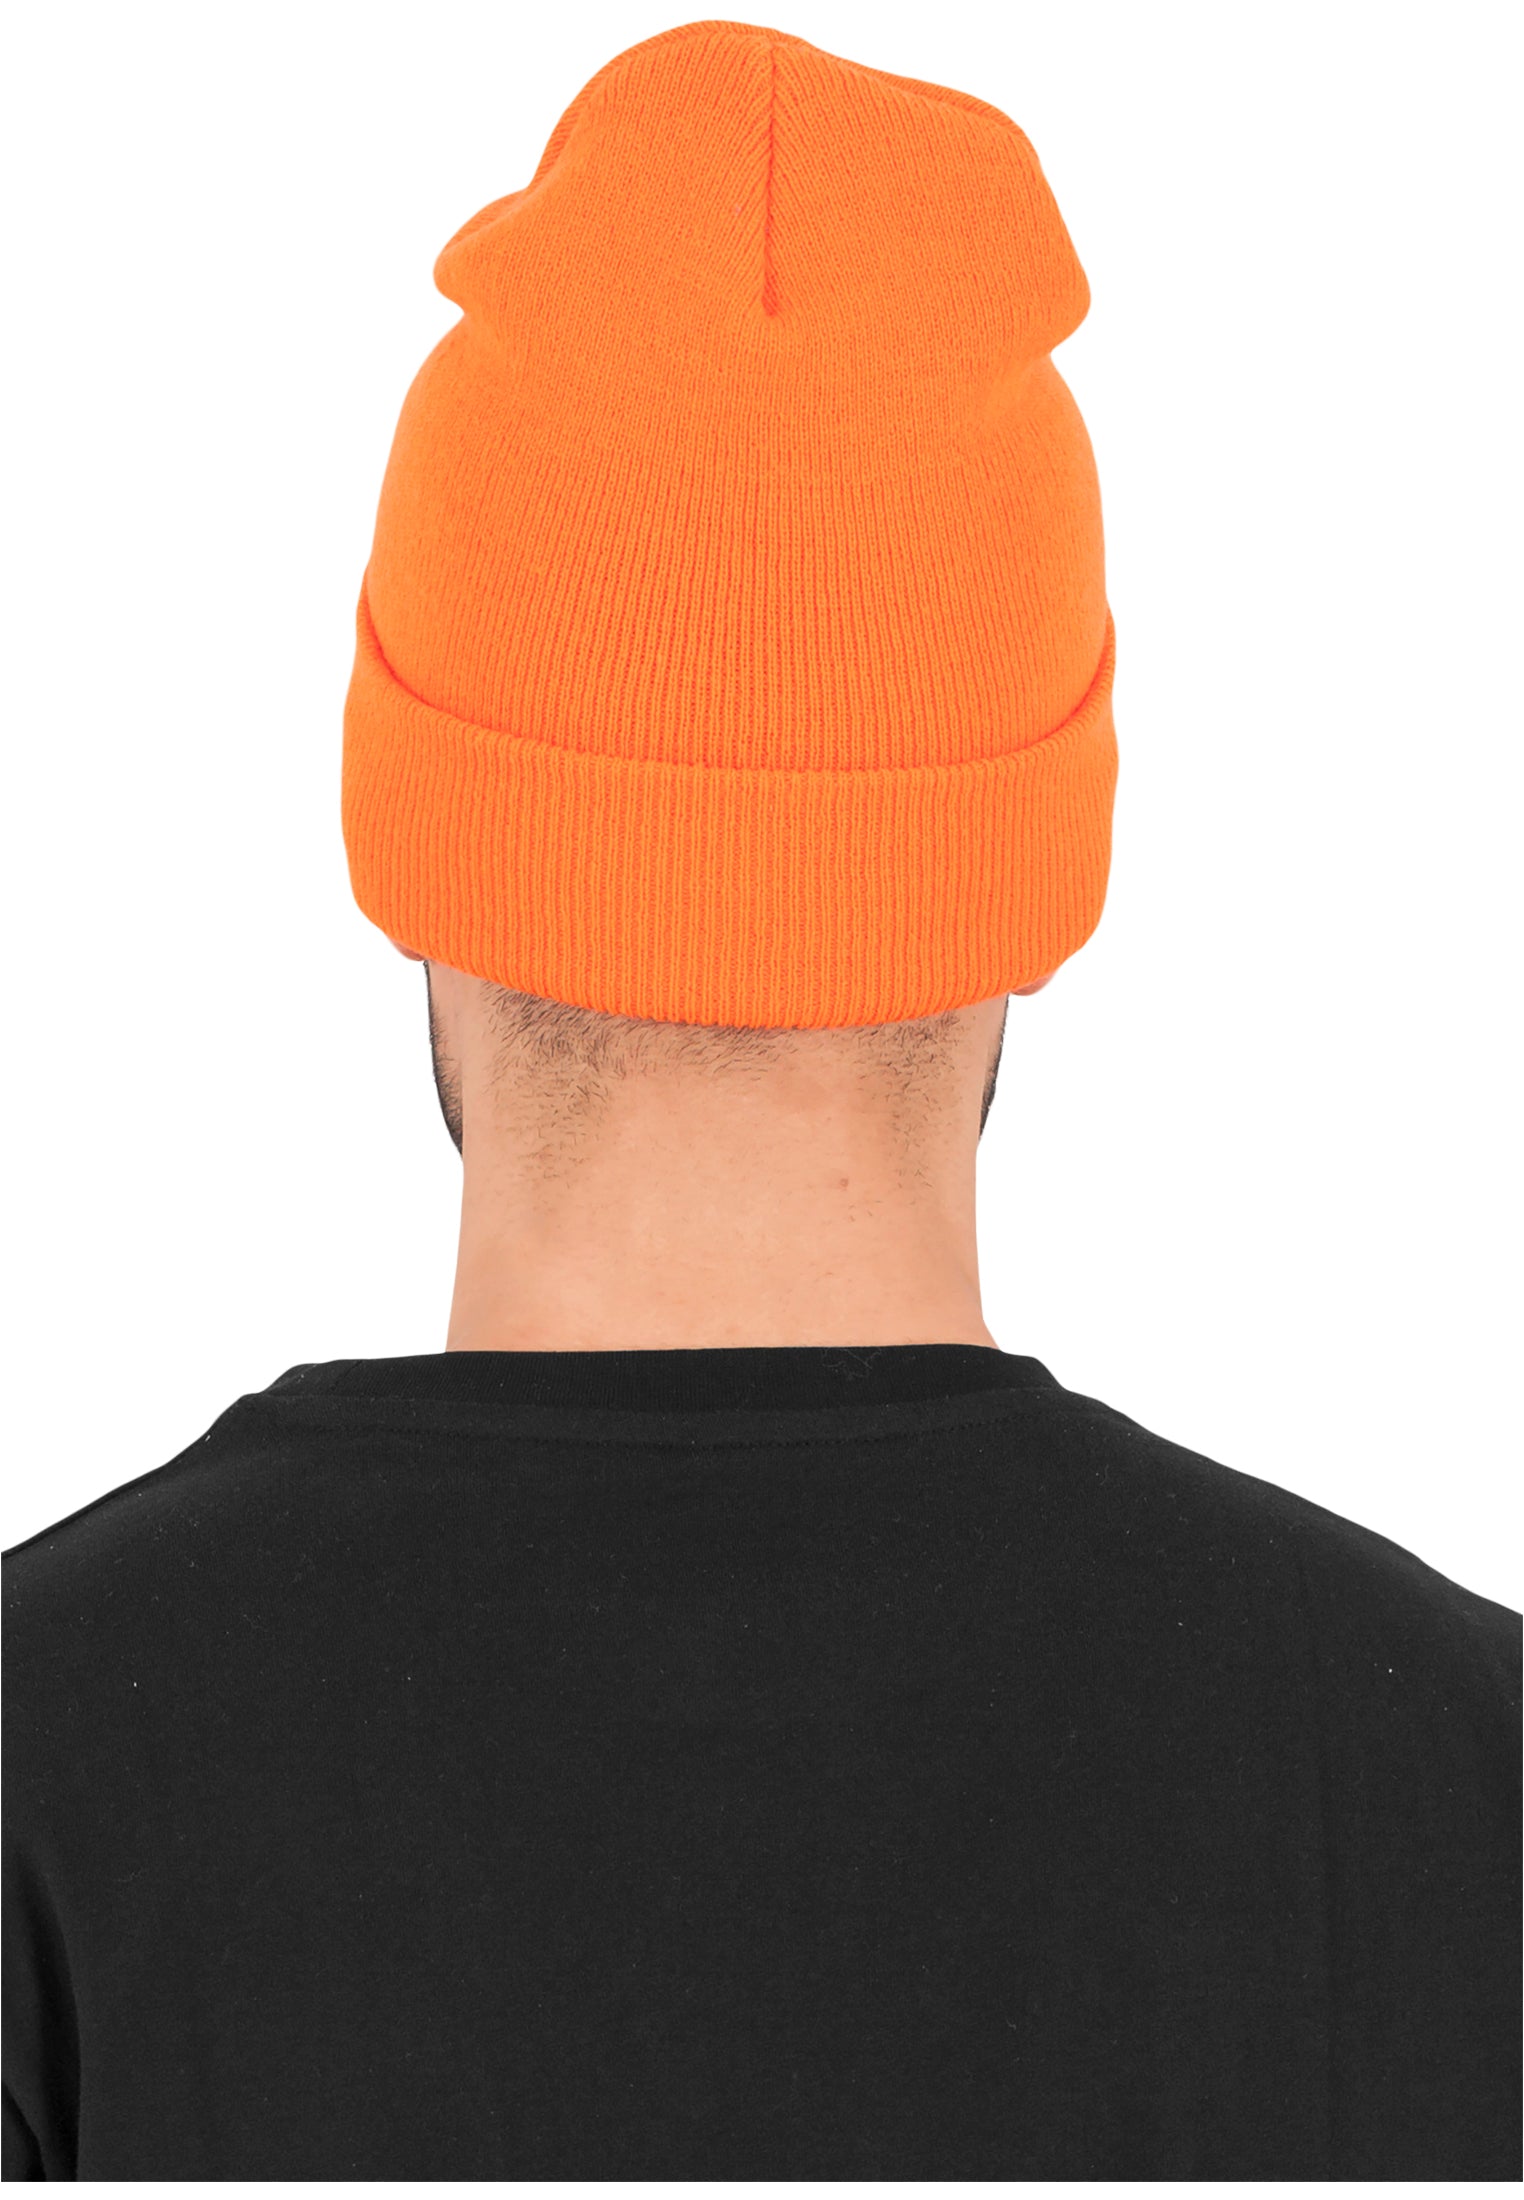 Yupoong Fold Up Beanie - Orange - Headz Up 